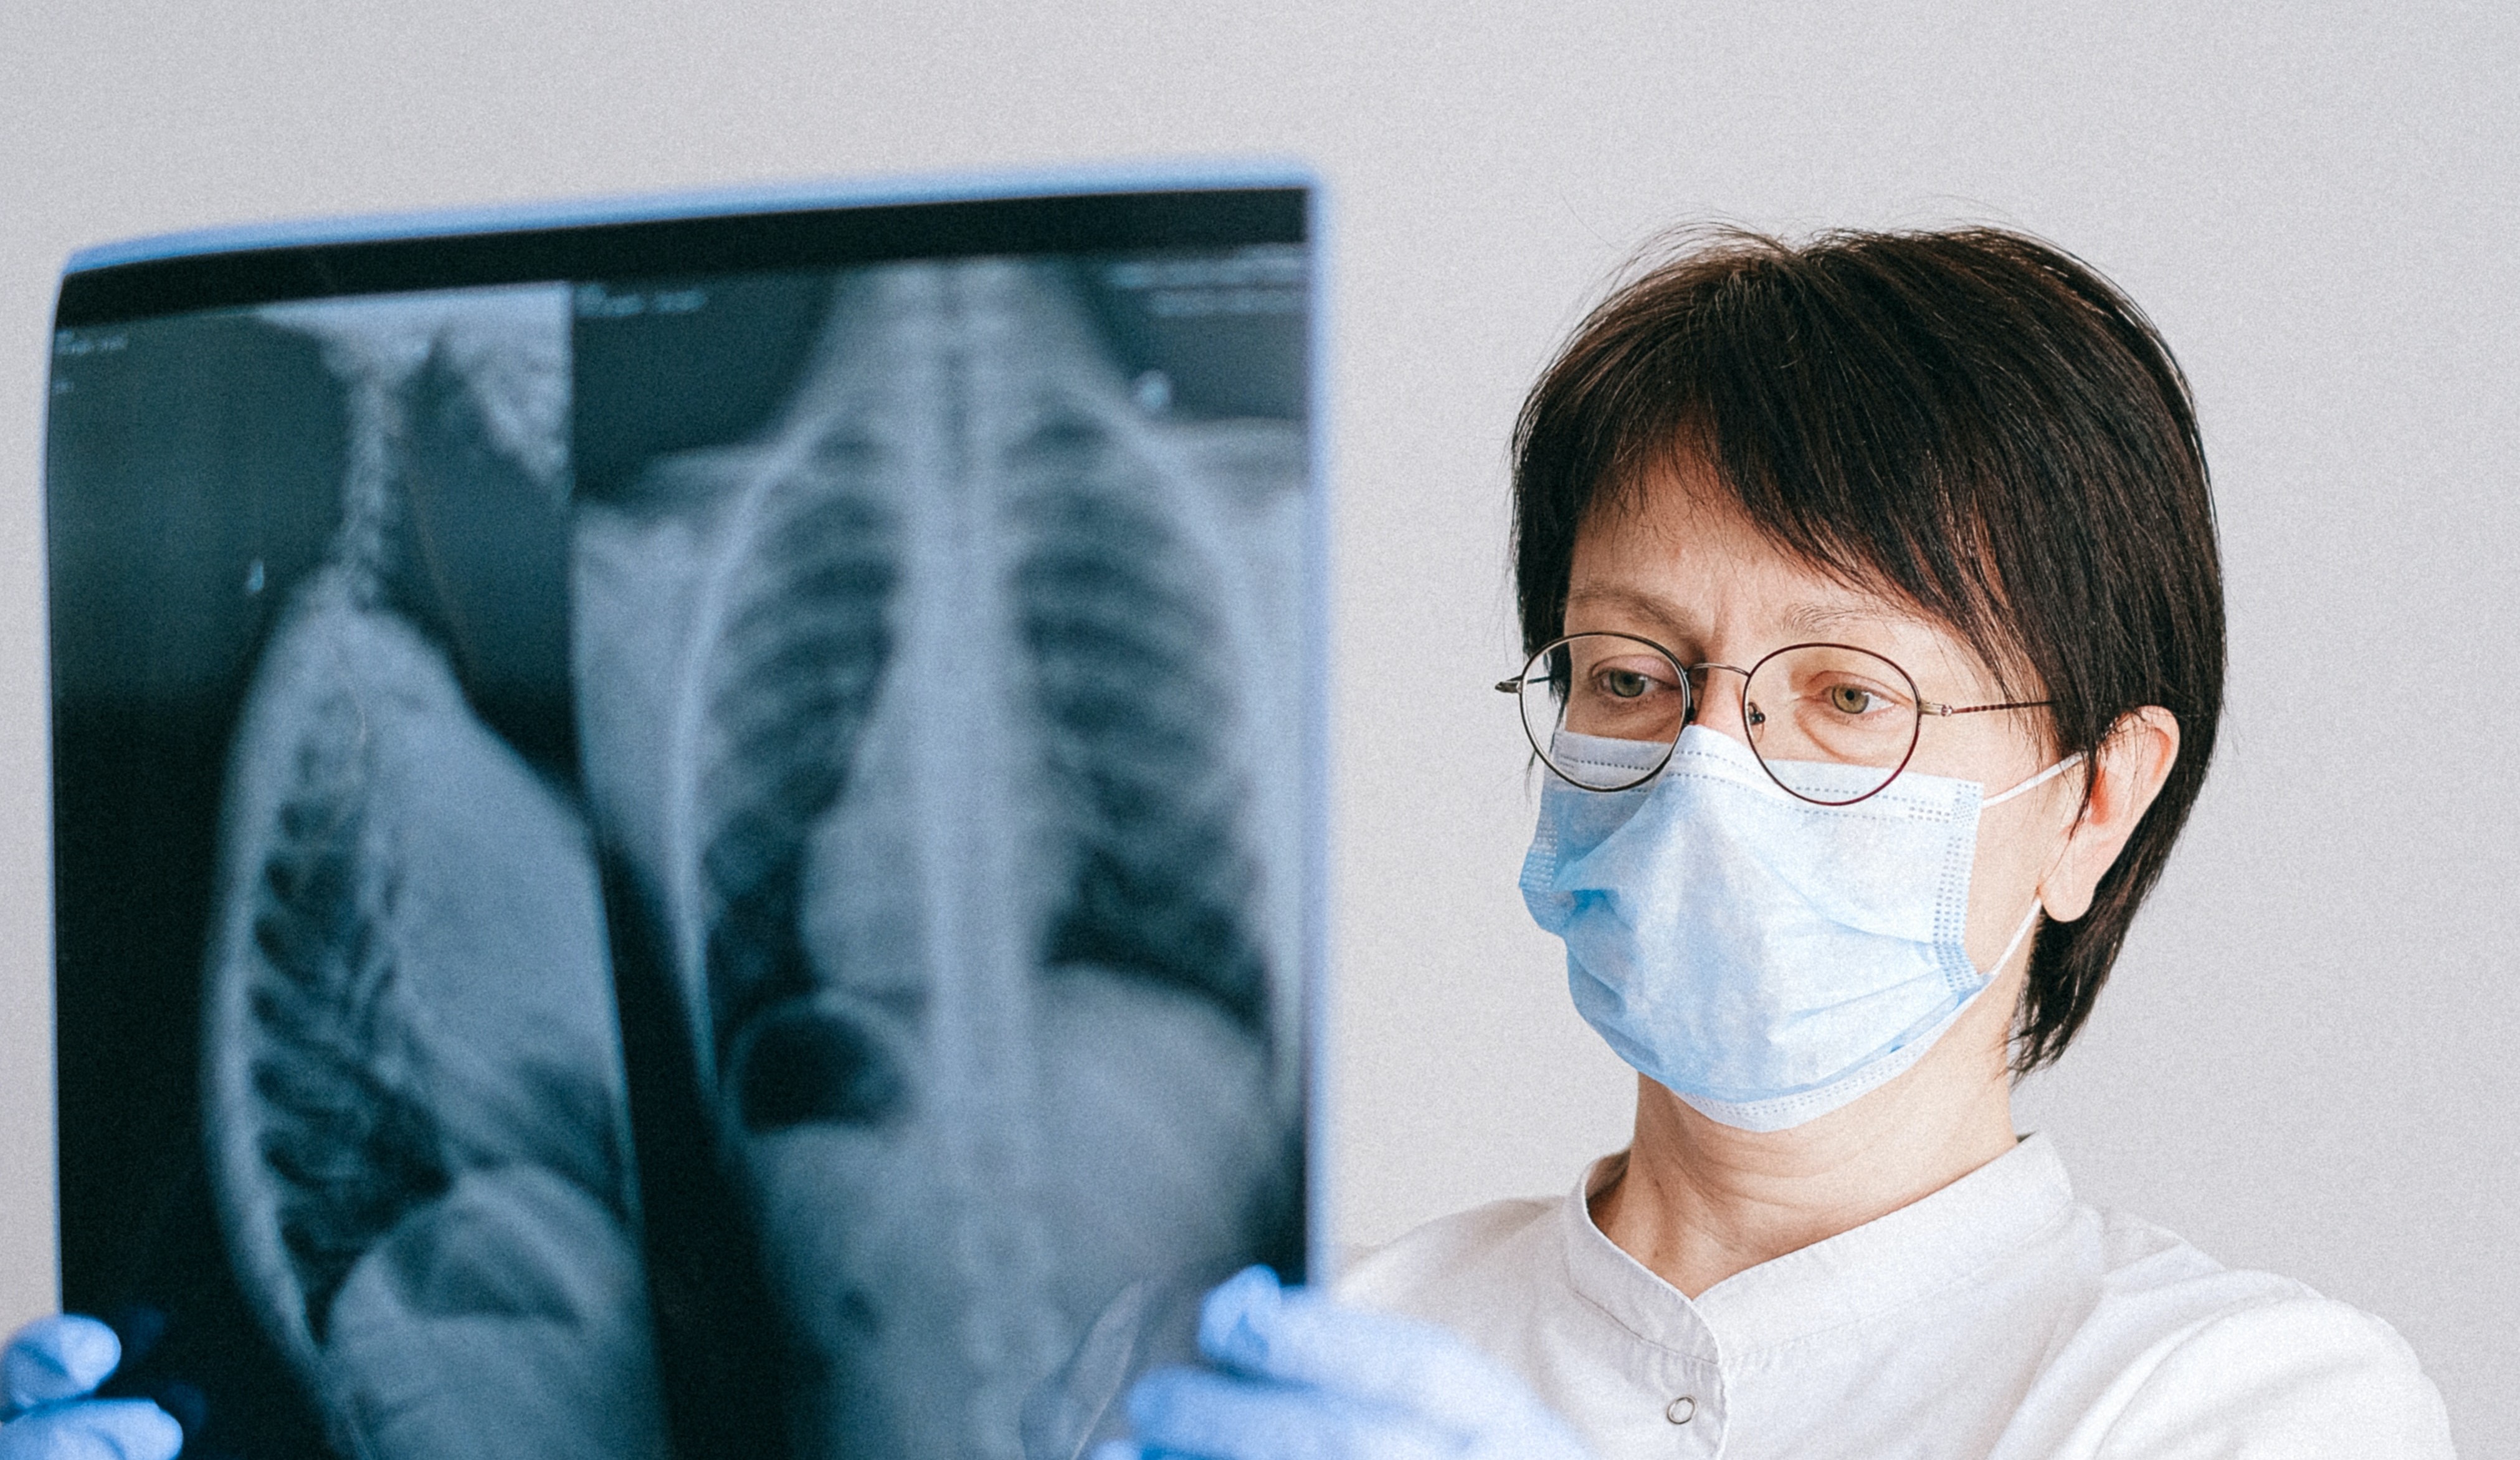 La ciencia busca soluciones para apoyar a  los pacientes con cáncer de pulmón avanzado.  (Foto Prensa Libre: Anna Shvets/Pexels)
